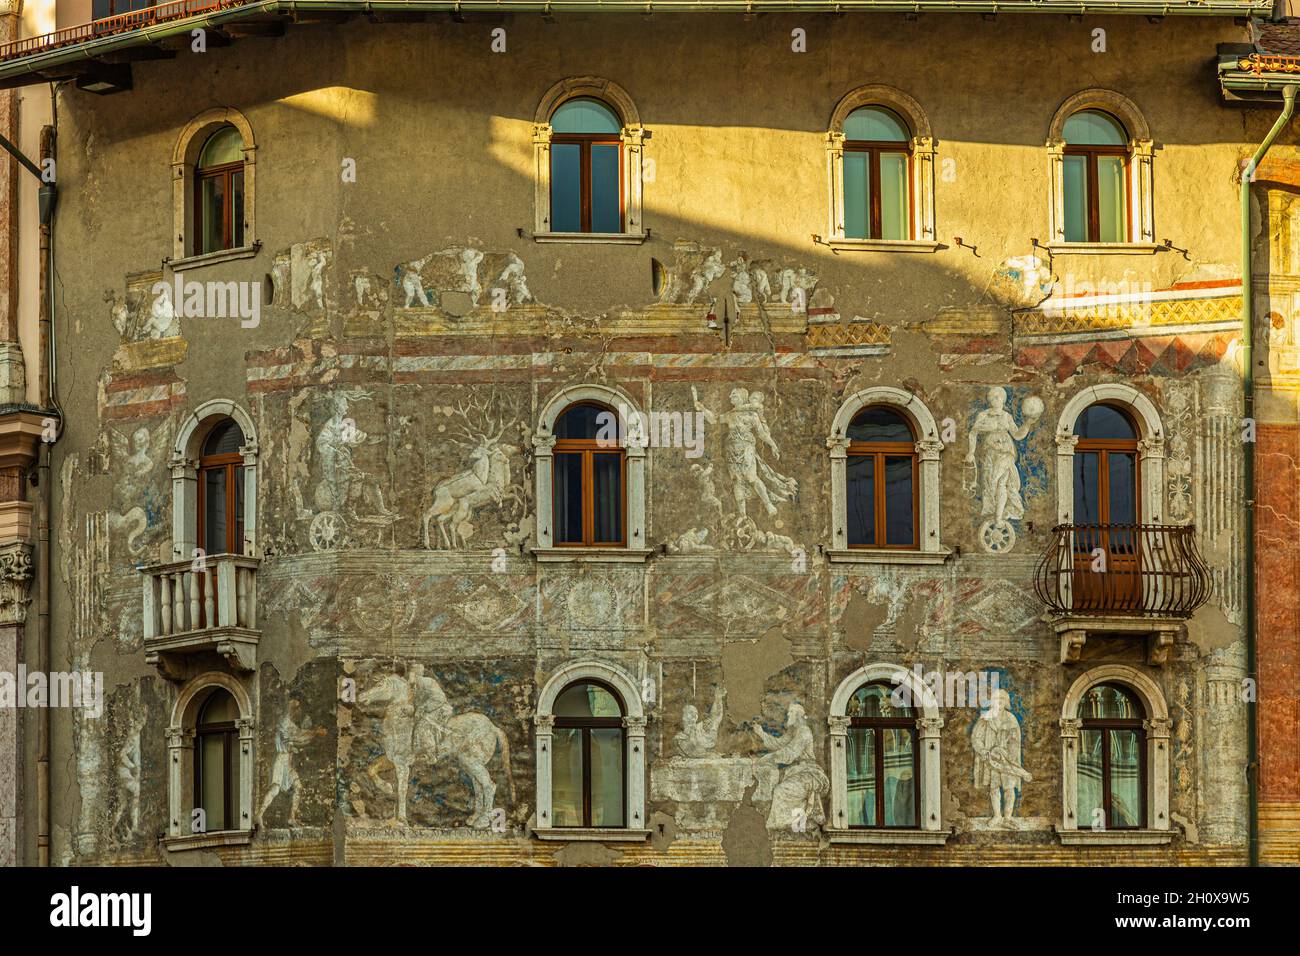 Fresques sur la façade d'une maison historique sur la Piazza Duomo à trente. Trento, province autonome de Trento, Trentin-Haut-Adige, Italie, Europe Banque D'Images